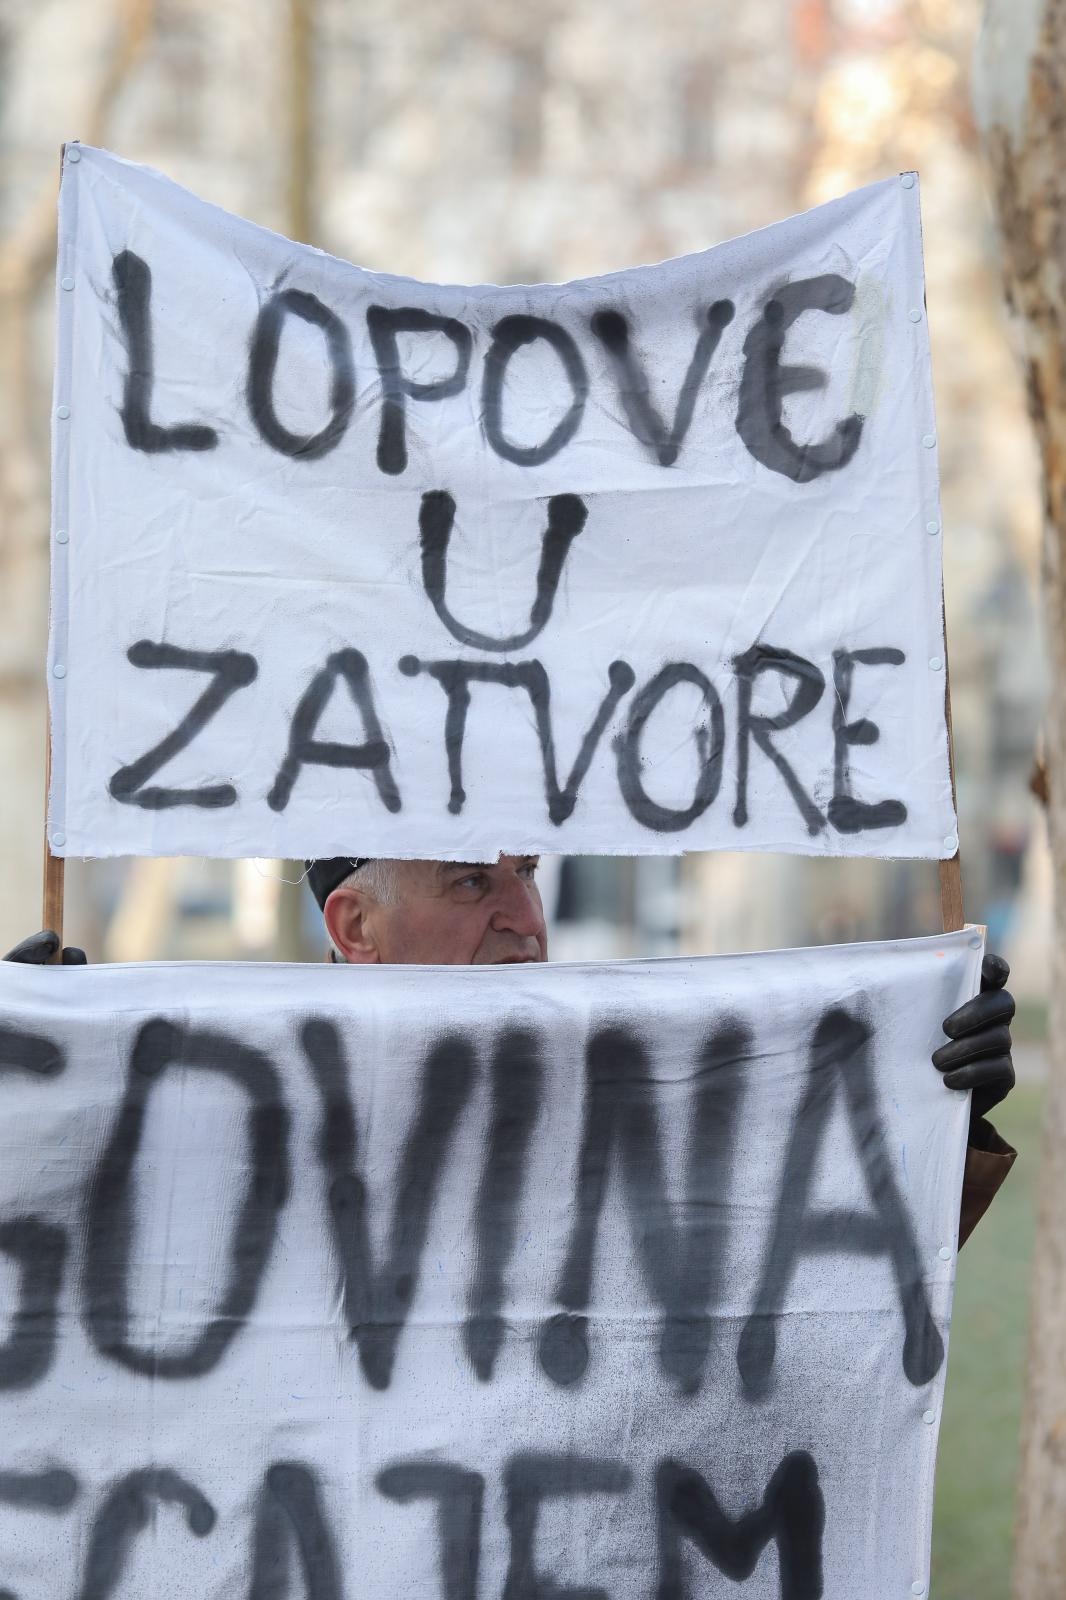 Građani i aktivisti okupili su se jutros ispred Županijskog suda u Zagrebu. 